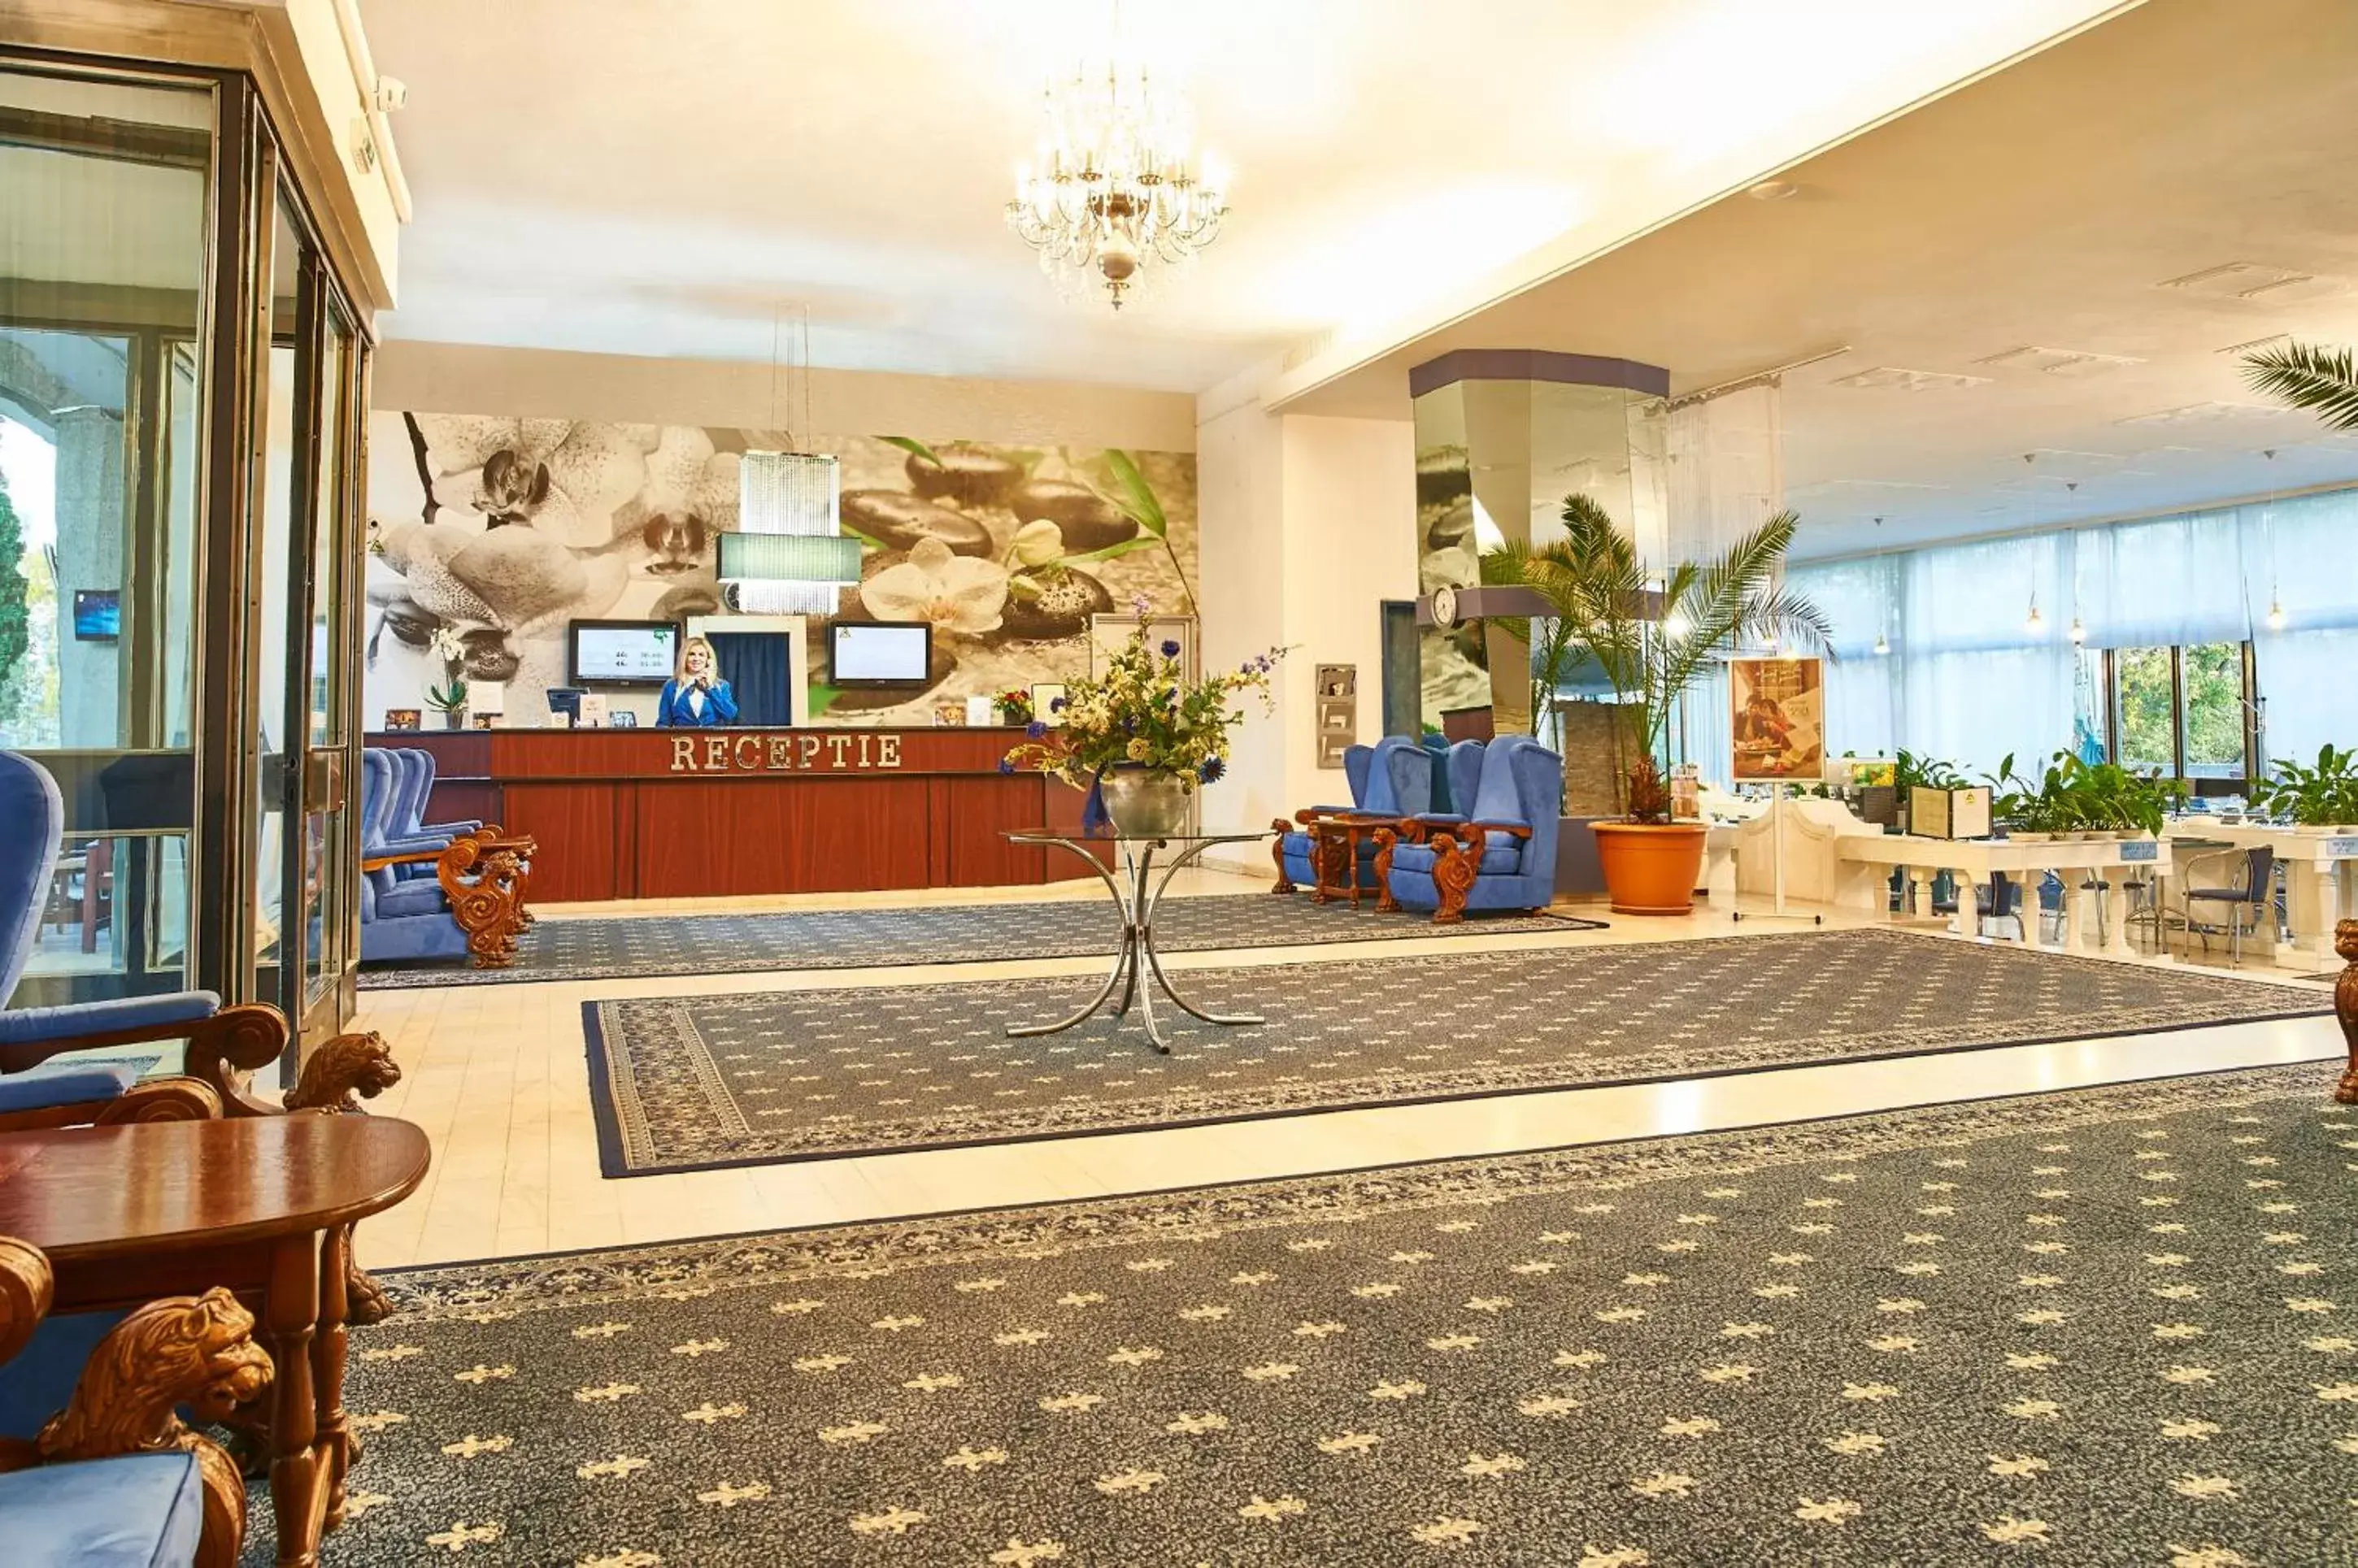 Lobby or reception, Lobby/Reception in Continental Drobeta Turnu Severin